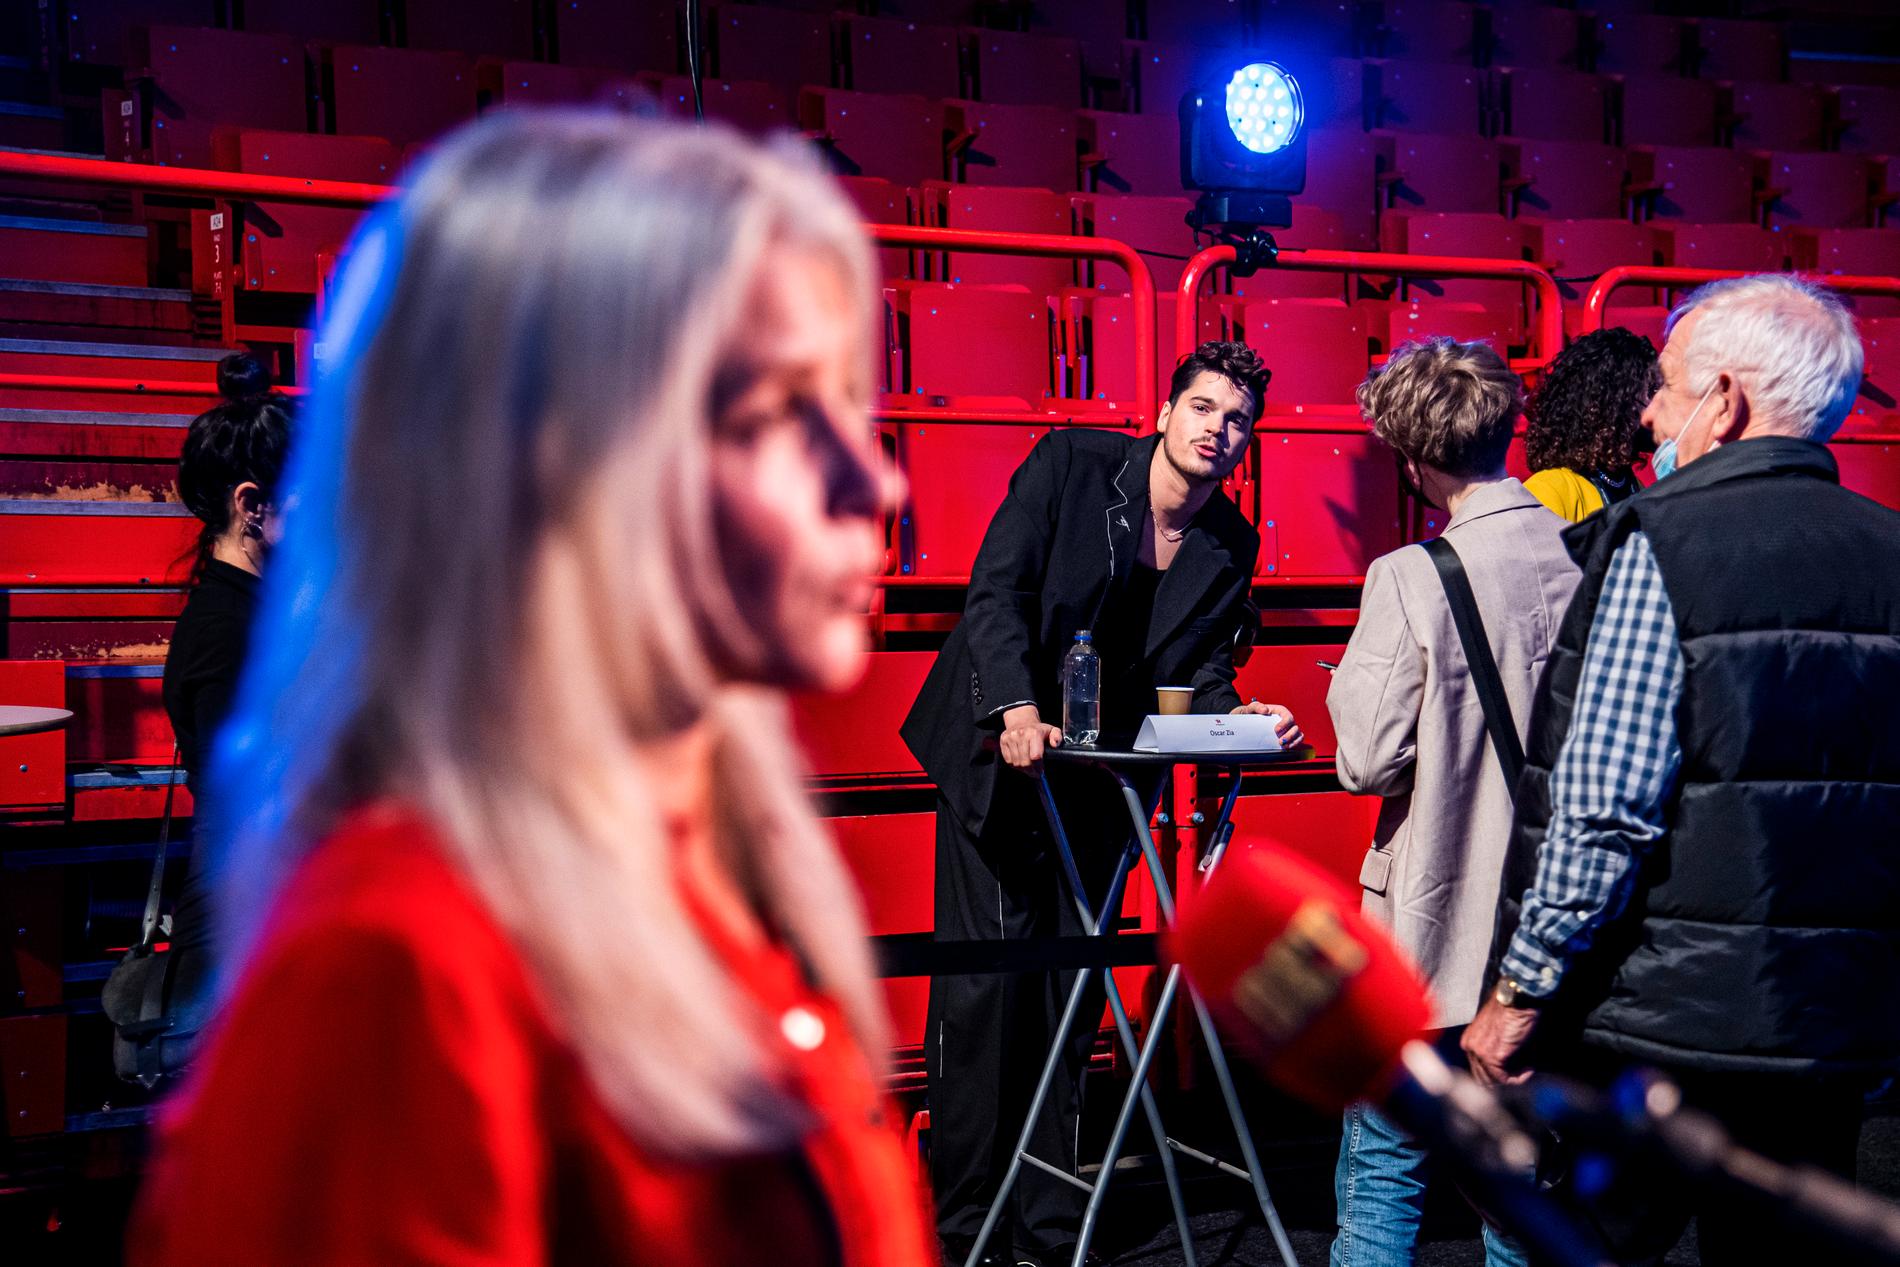 2022. Melodifestivalens app har precis havererat mitt under sändningen av den första deltävlingen. Mello-chefen Anette Brattström intervjuas i Aftonbladets direktsändning i förgrunden. Till programledaren Oscar Zia är det lång kö.